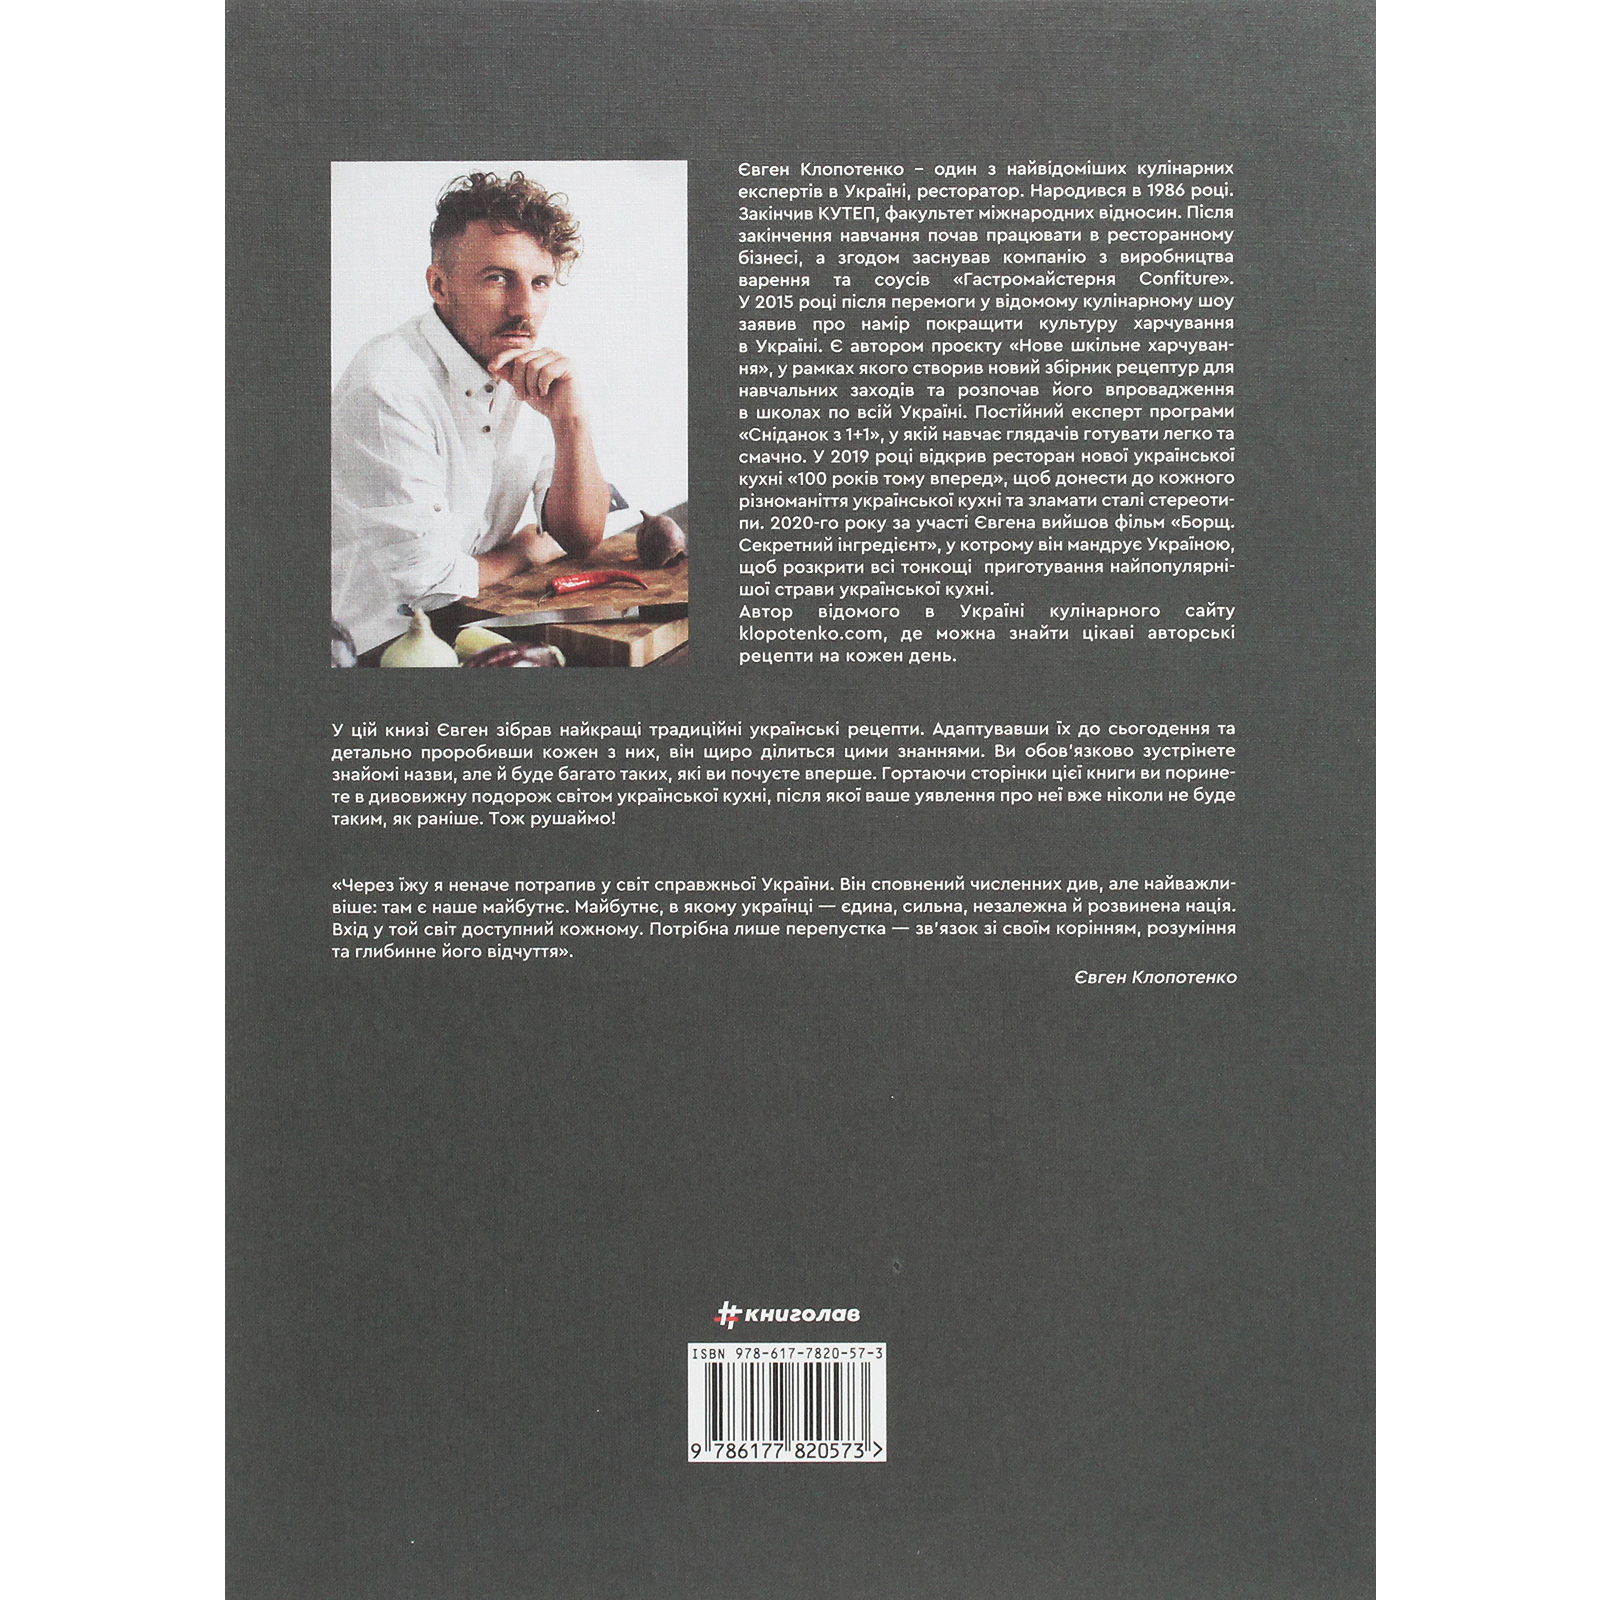 Книга Зваблення їжею з українським смаком - Євген Клопотенко #книголав (9786177820573) зображення 2